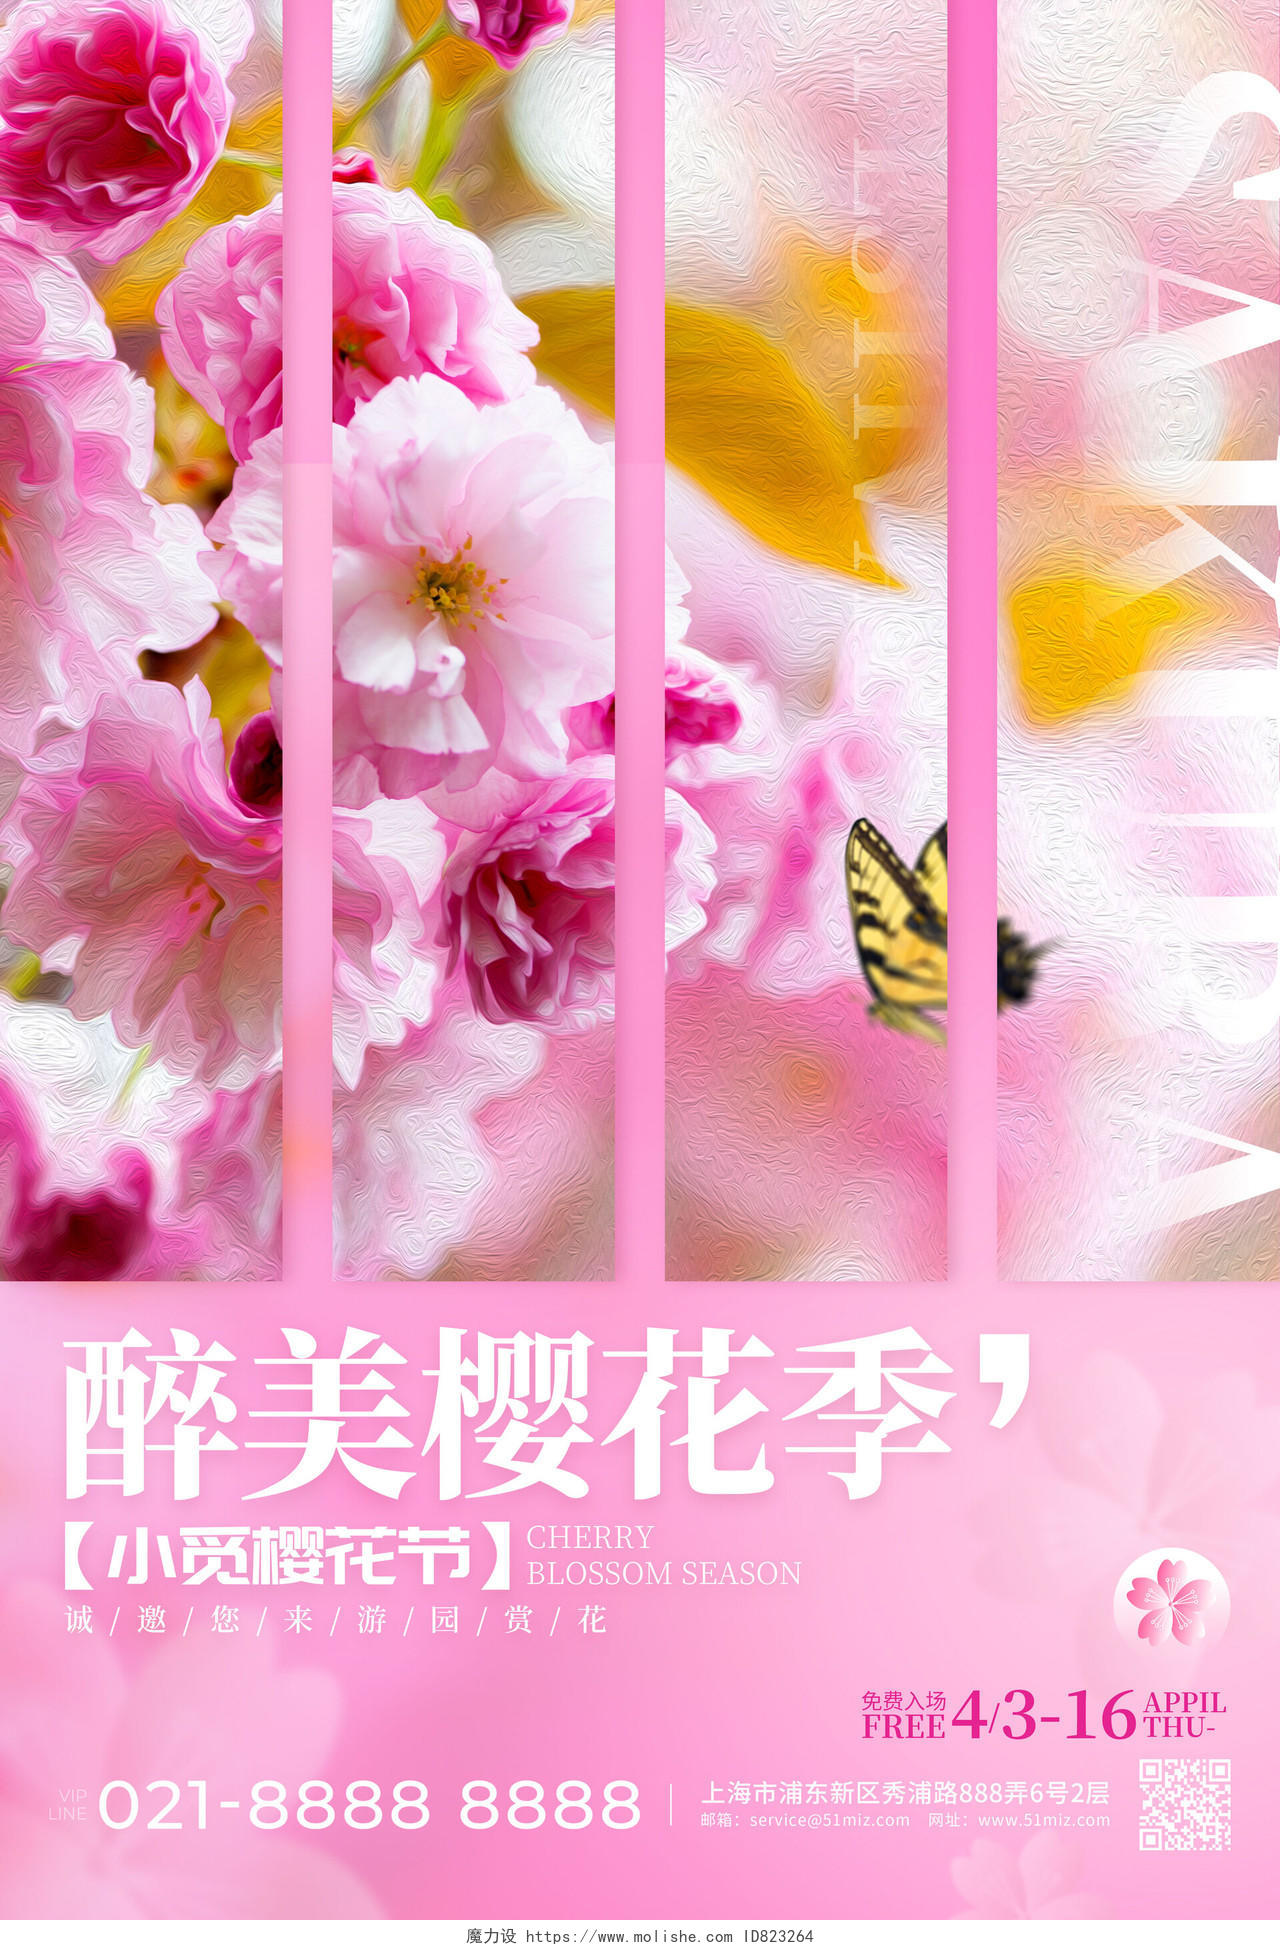 粉红色实拍风格醉美樱花季樱花节海报樱花海报